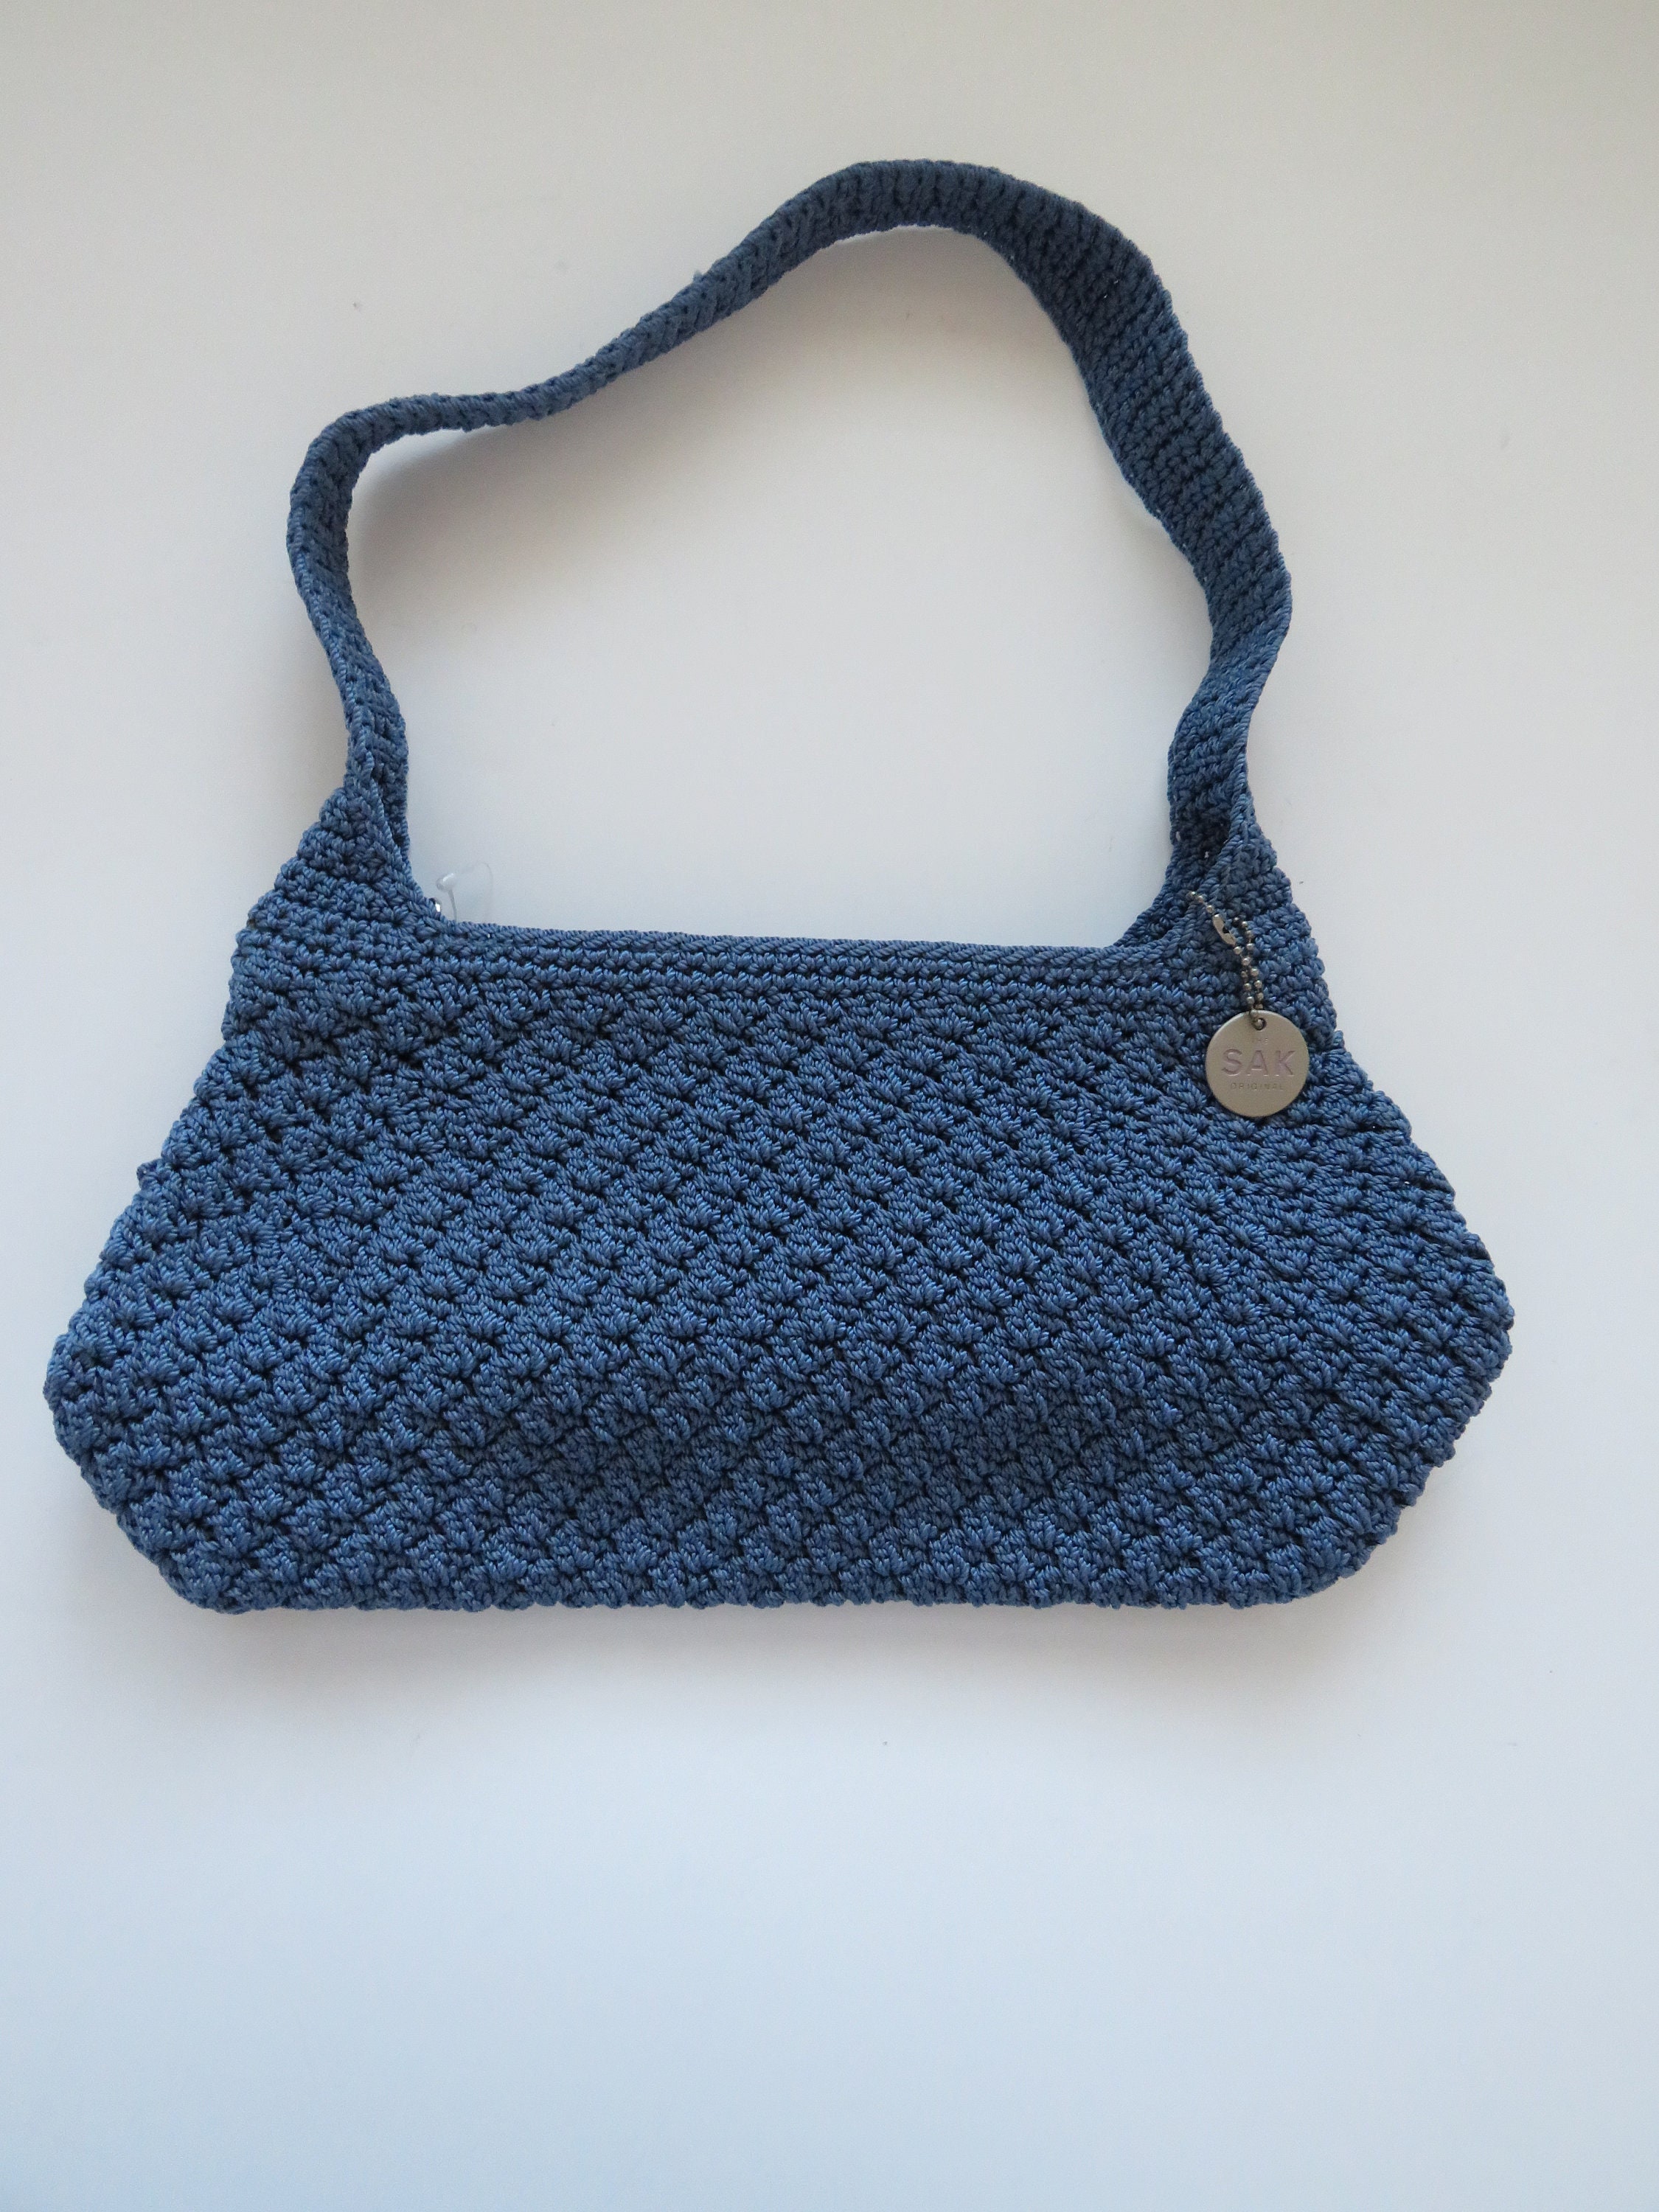 The Sak Shoulderbag the Sak Hobo Bag Vintage Crocheted 